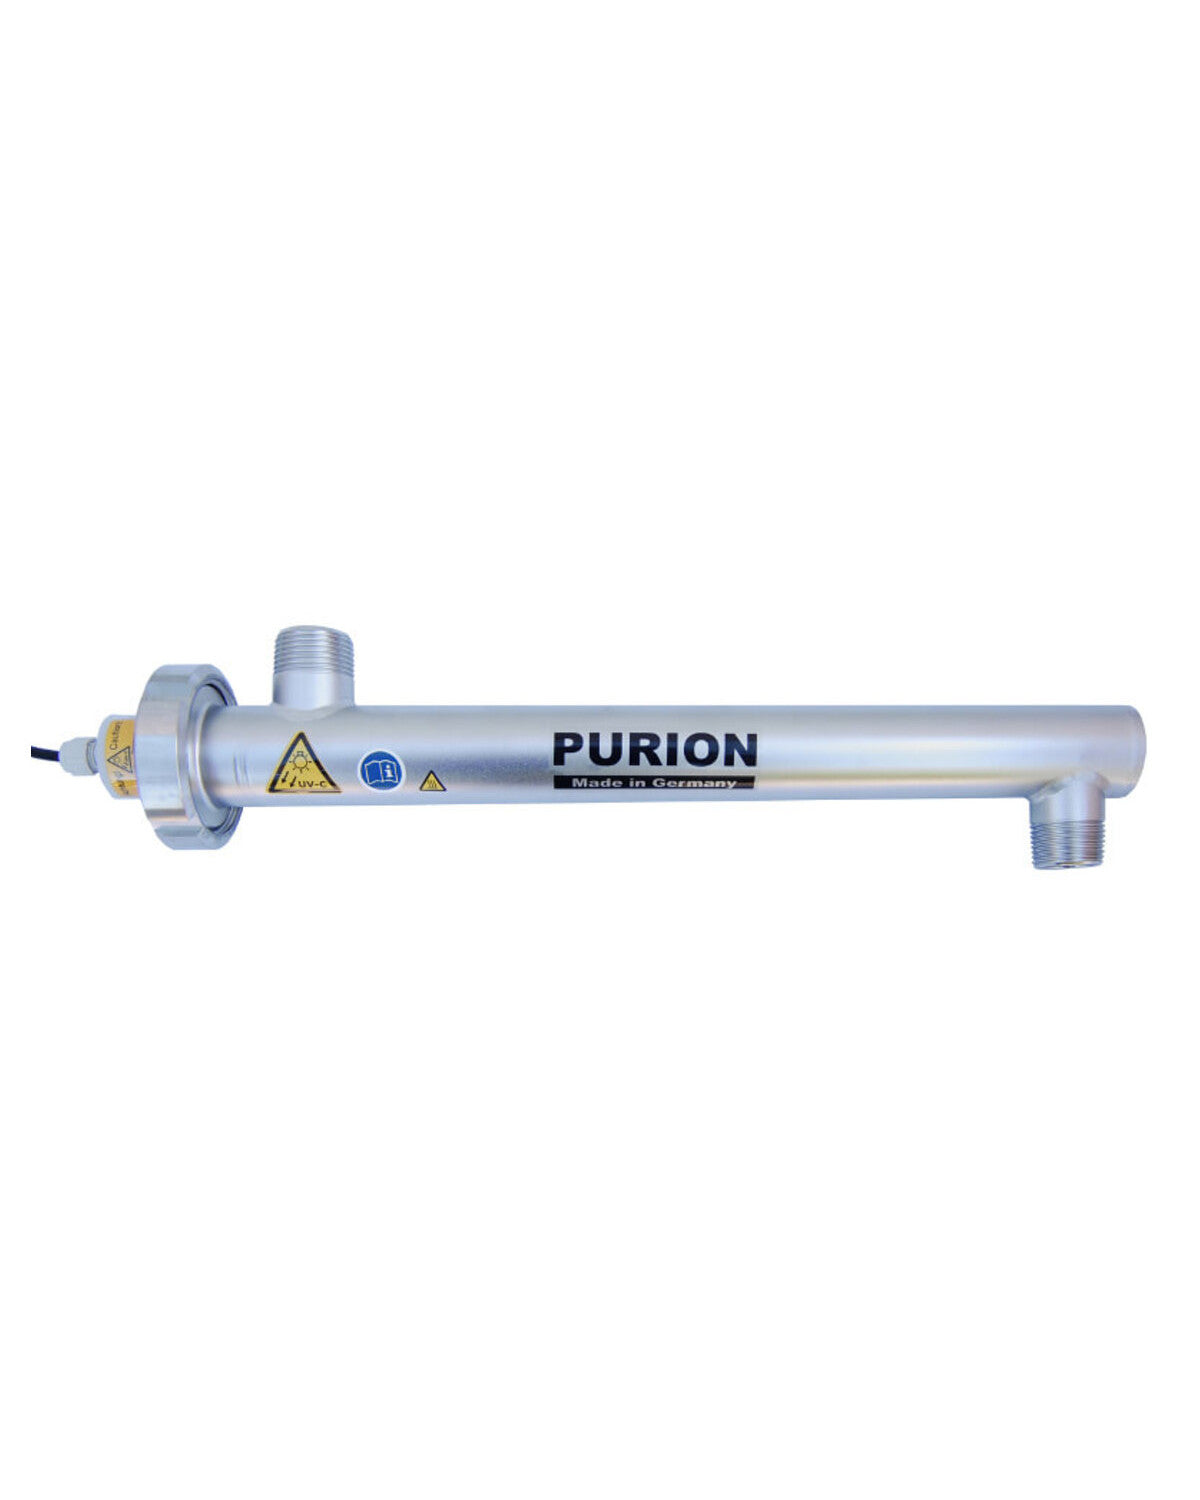 PURION 1000 110 - 240 V AC OPD-Desinfektion der Purion GmbH.